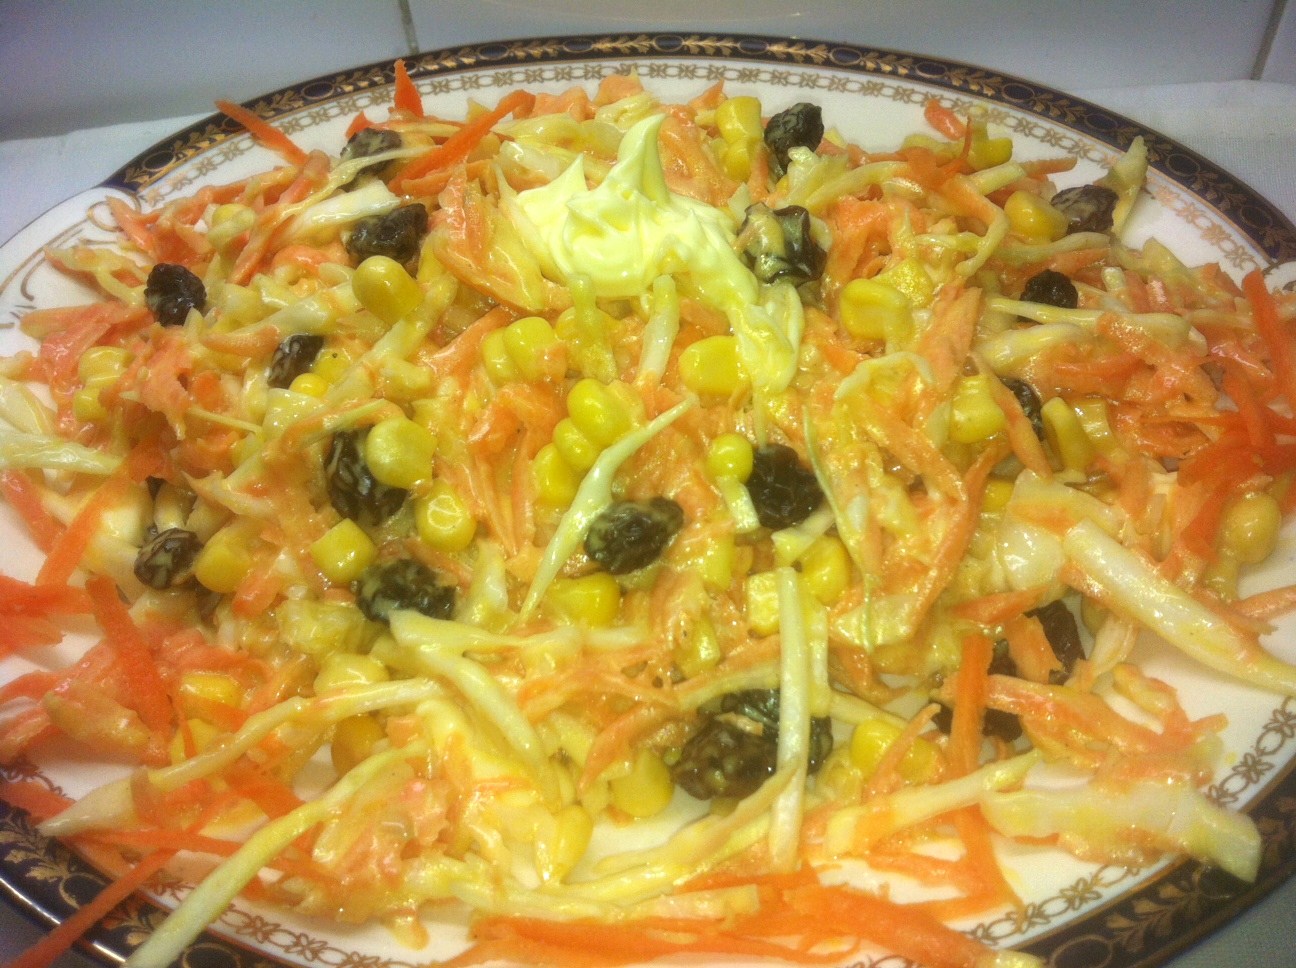 https://www.comidasypicadas.com/wp-content/uploads/2013/09/ensalada-de-zanahorias-1.jpg